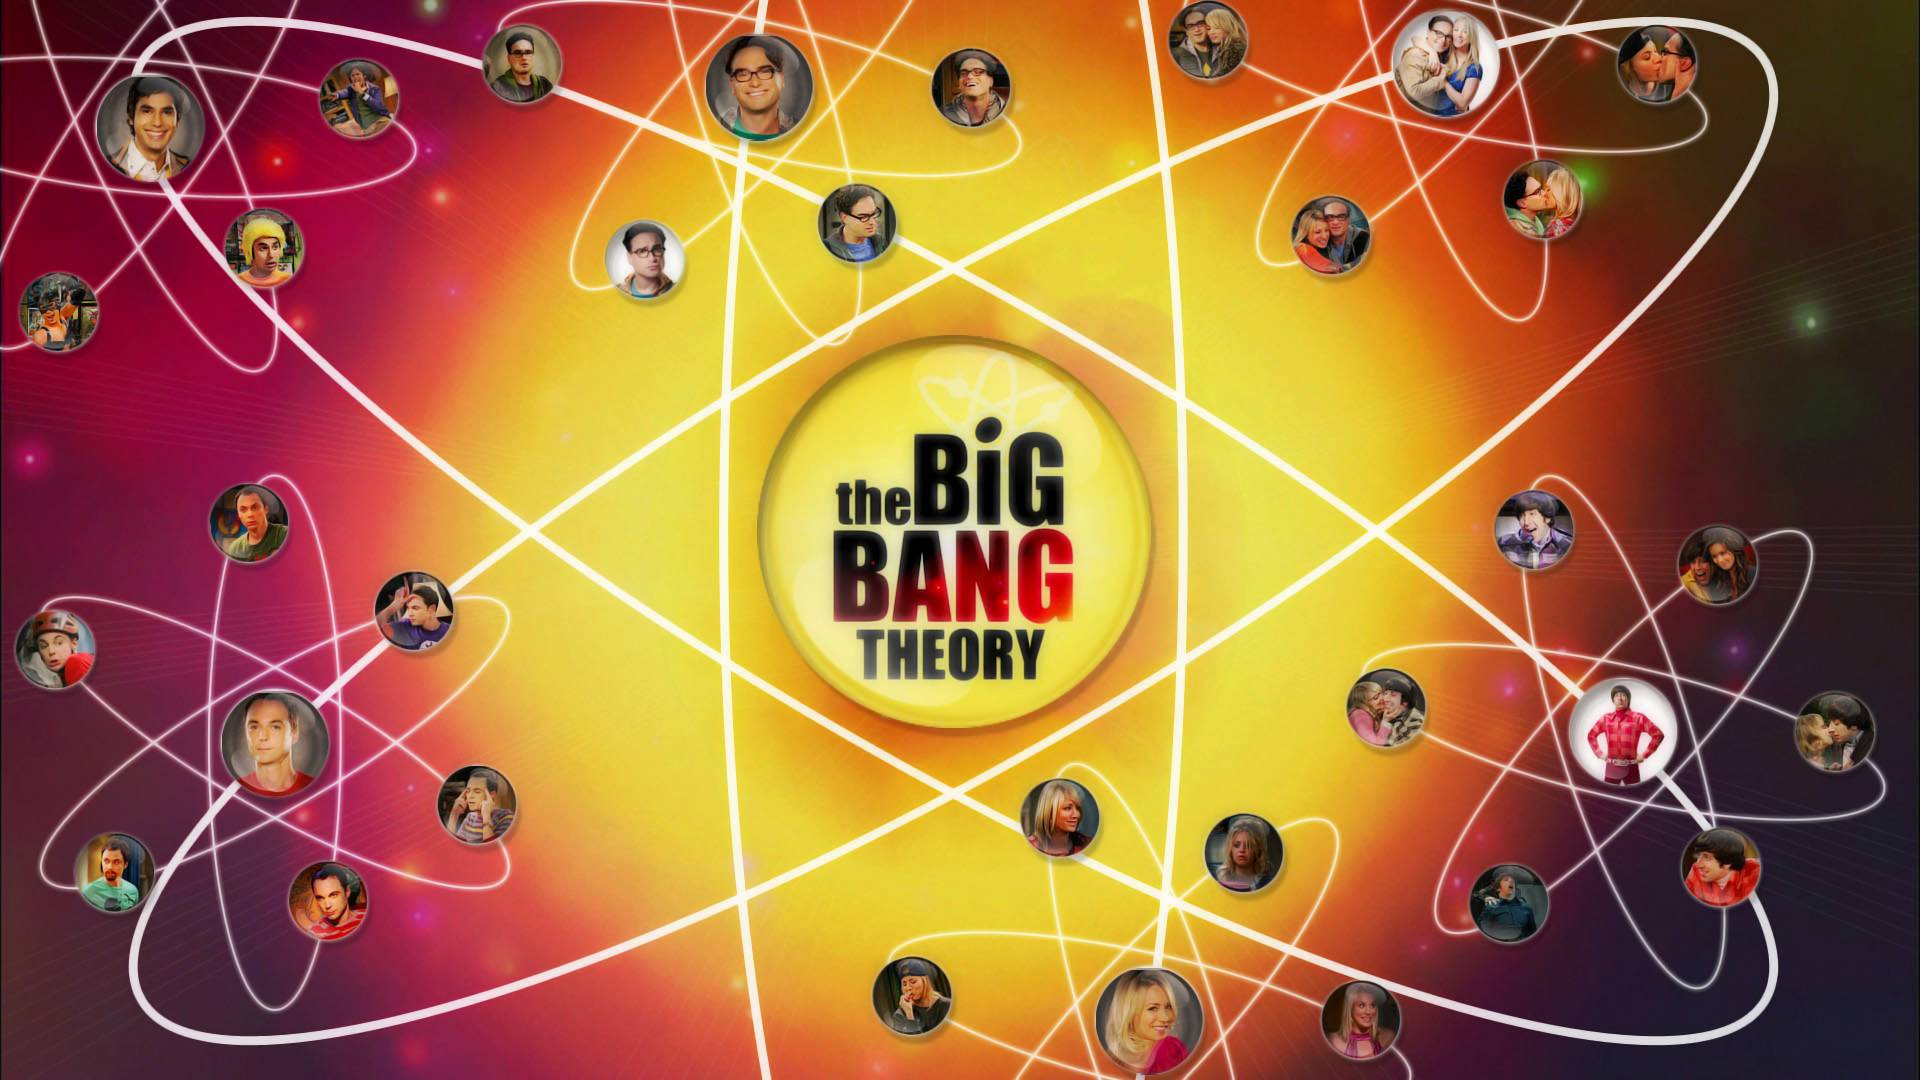 Euer Lieblingscharakter: The Big Bang Theory [TOP 9]